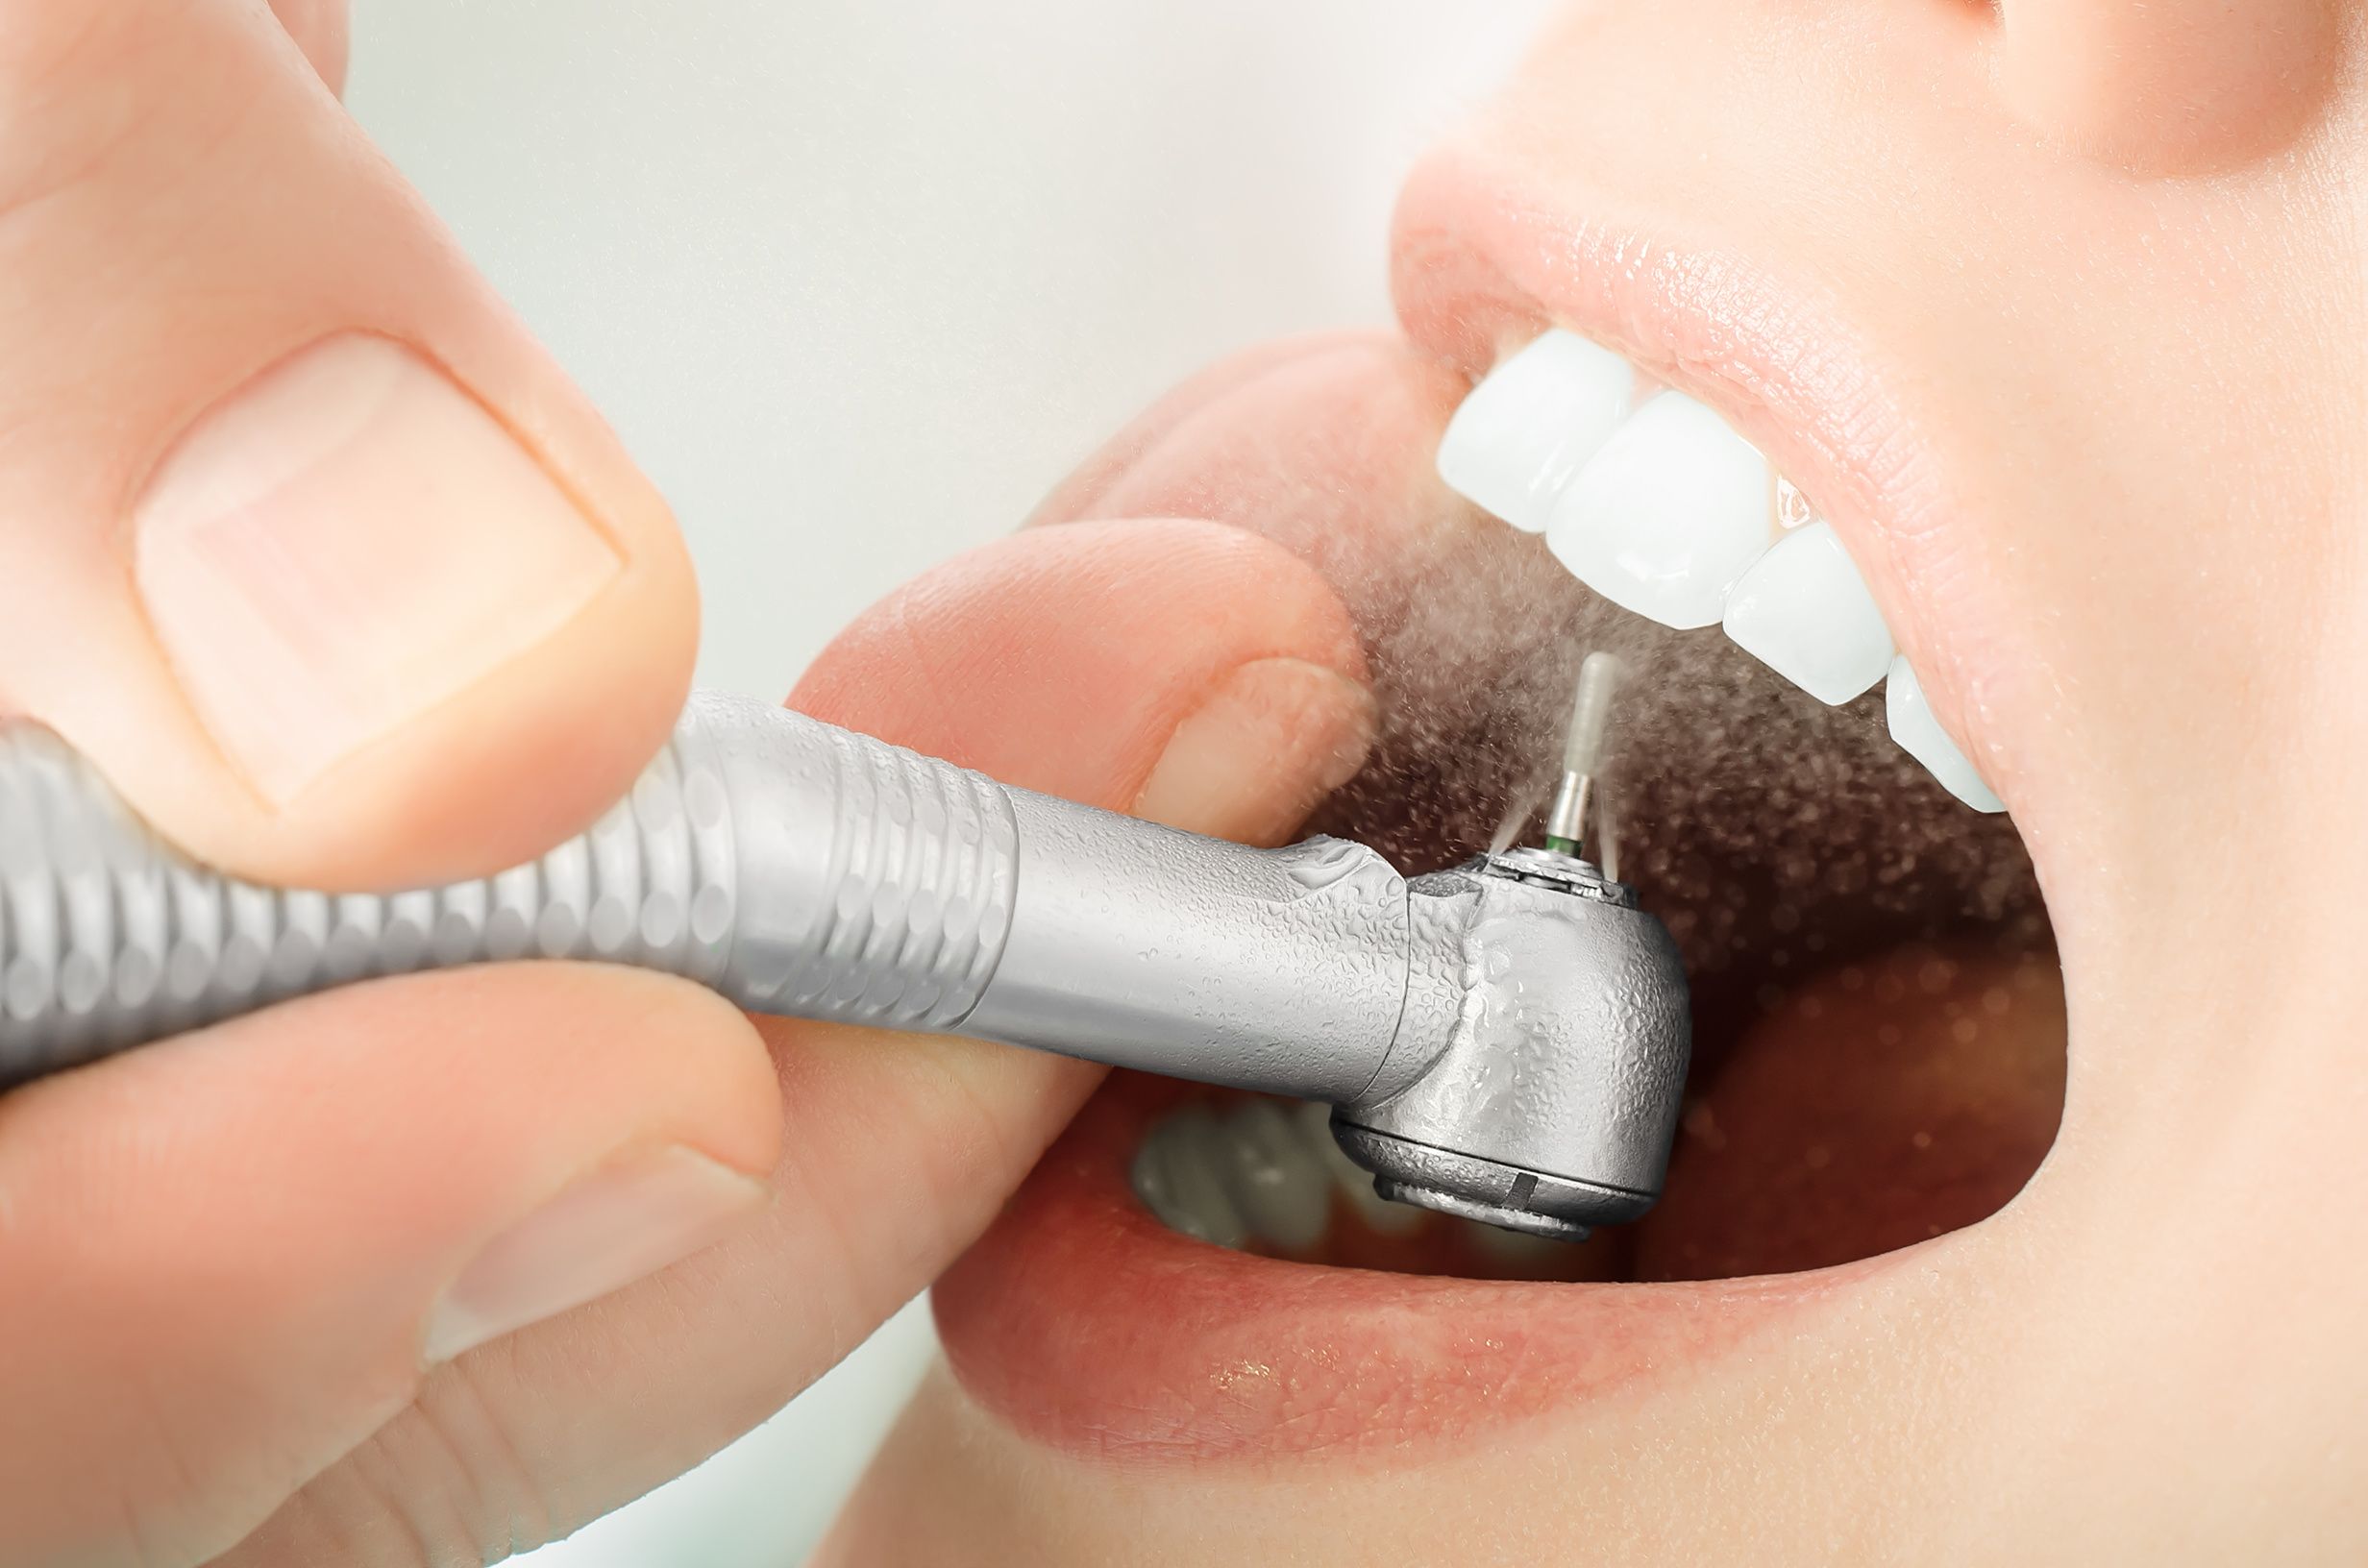 پرکردن دندان یک سطحی با کامپوزیت سوئیسی دکتر سهیل جابری نسب در تهران 1